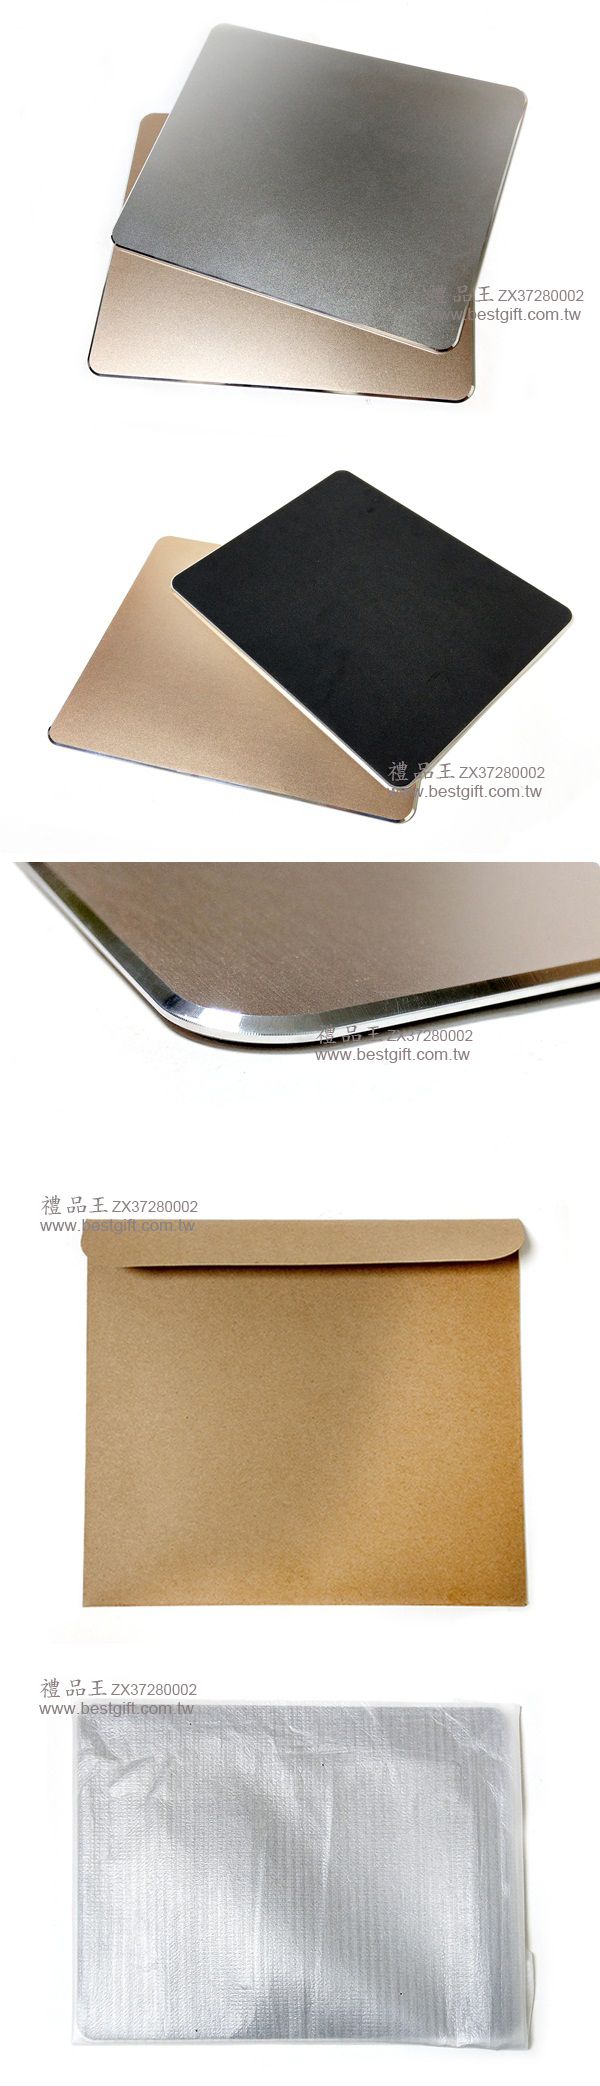  方形鋁合金滑鼠墊    商品貨號： ZX37280002  